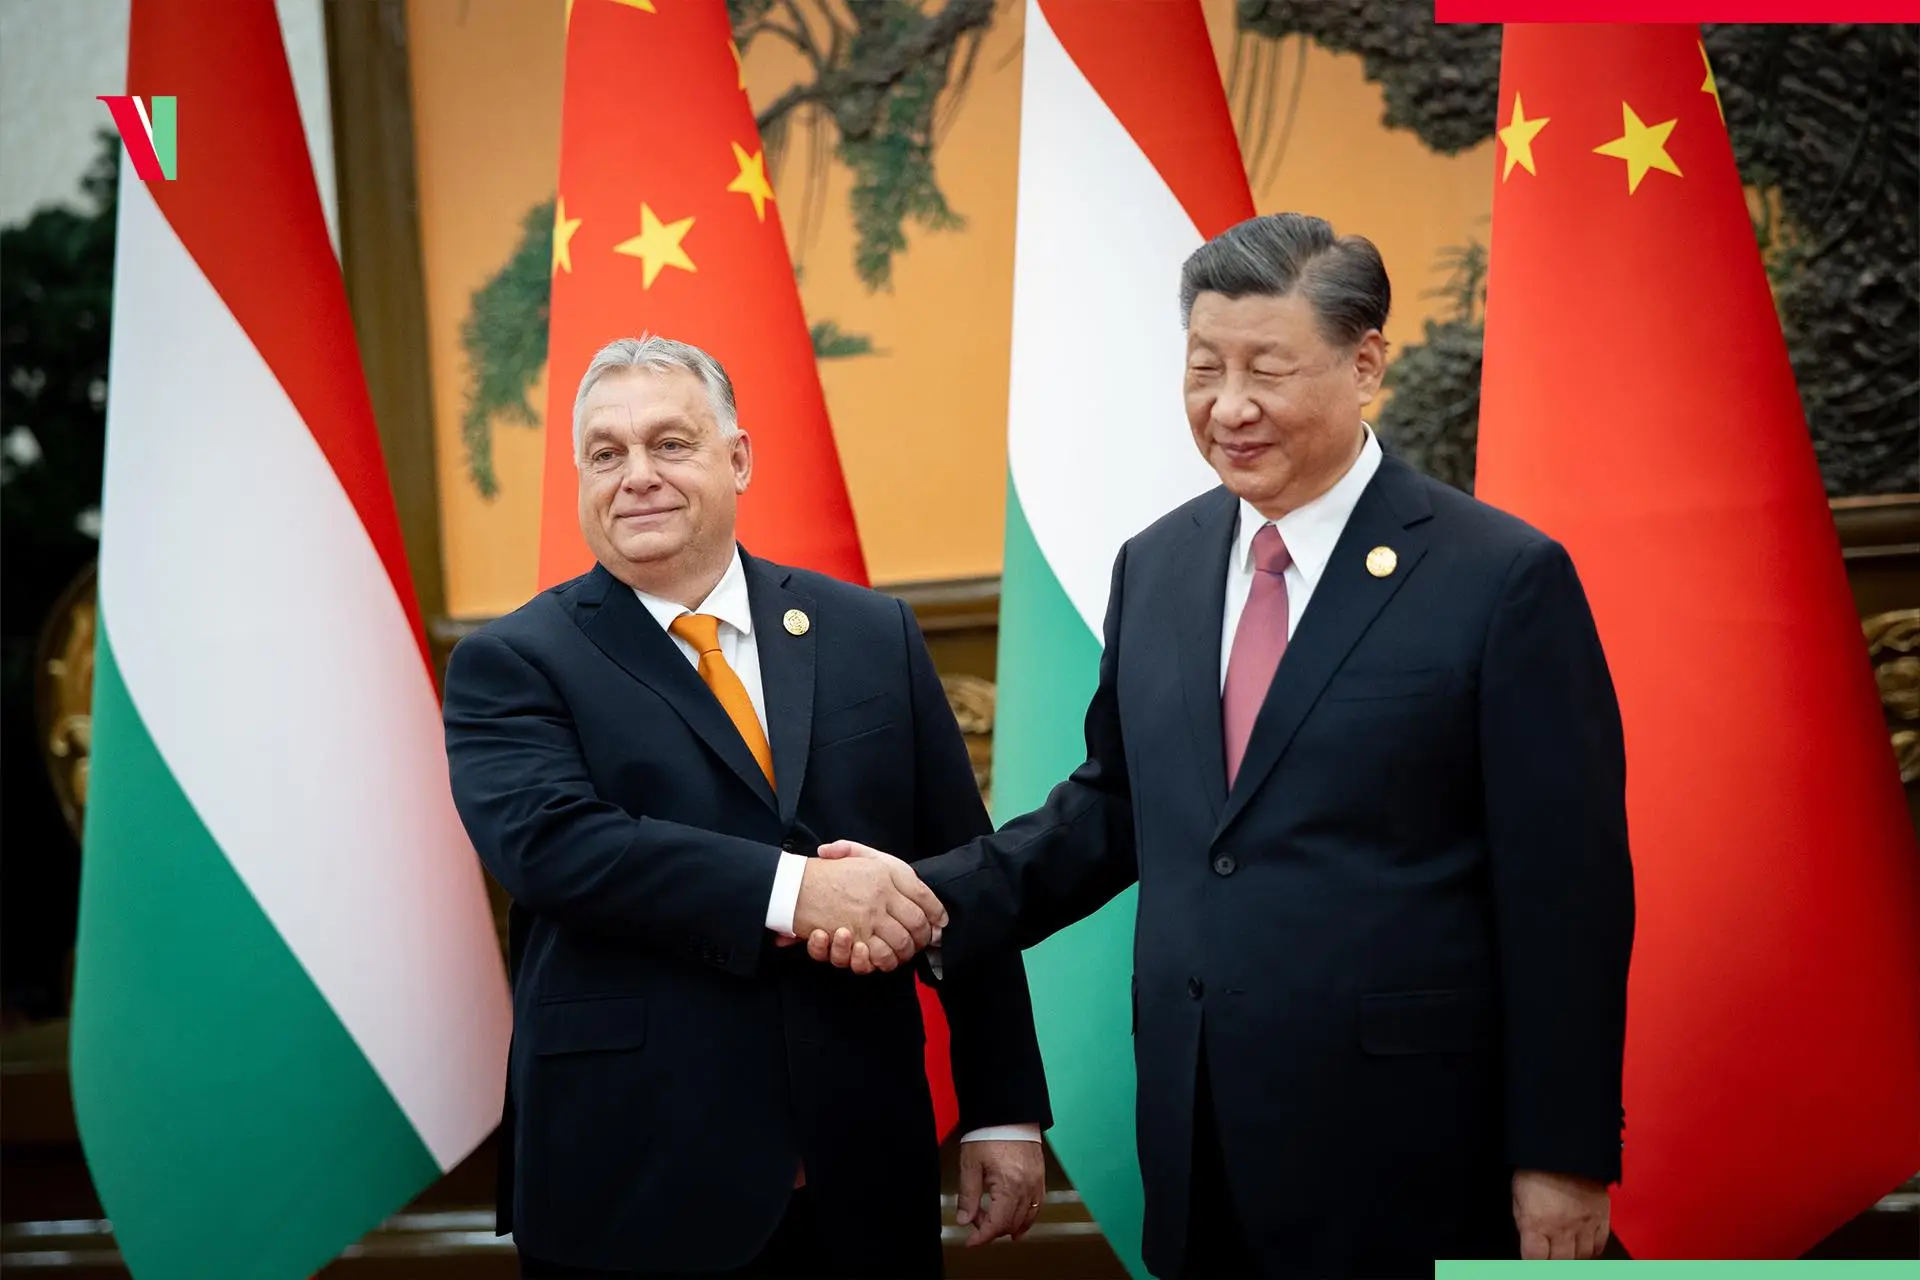 Kínai elnök budapesti látogatása: Miért jön Hszi Magyarországra?